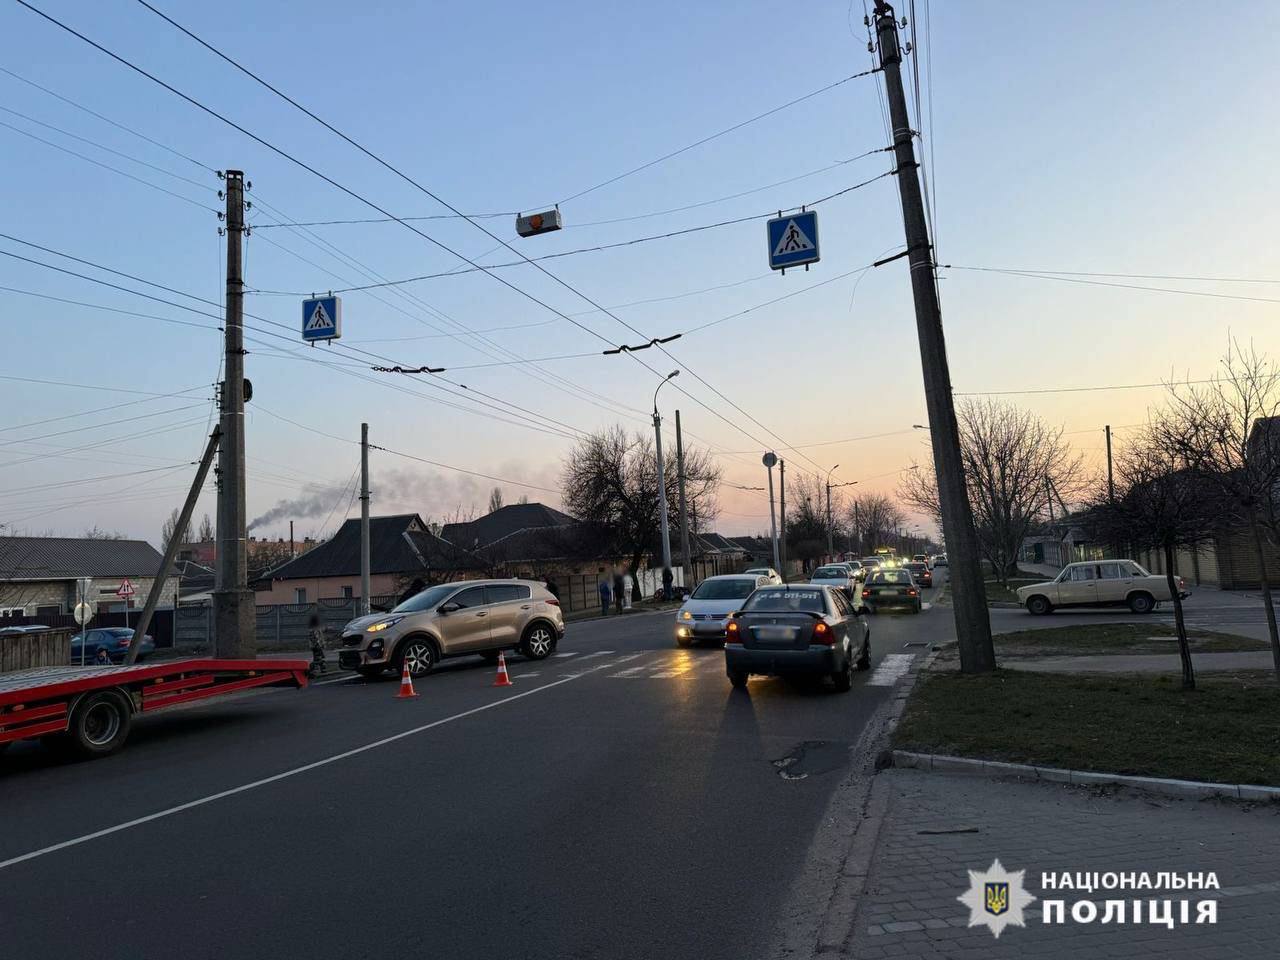 Аварія на перехресті в Черкасах: мотоцикліста госпіталізували